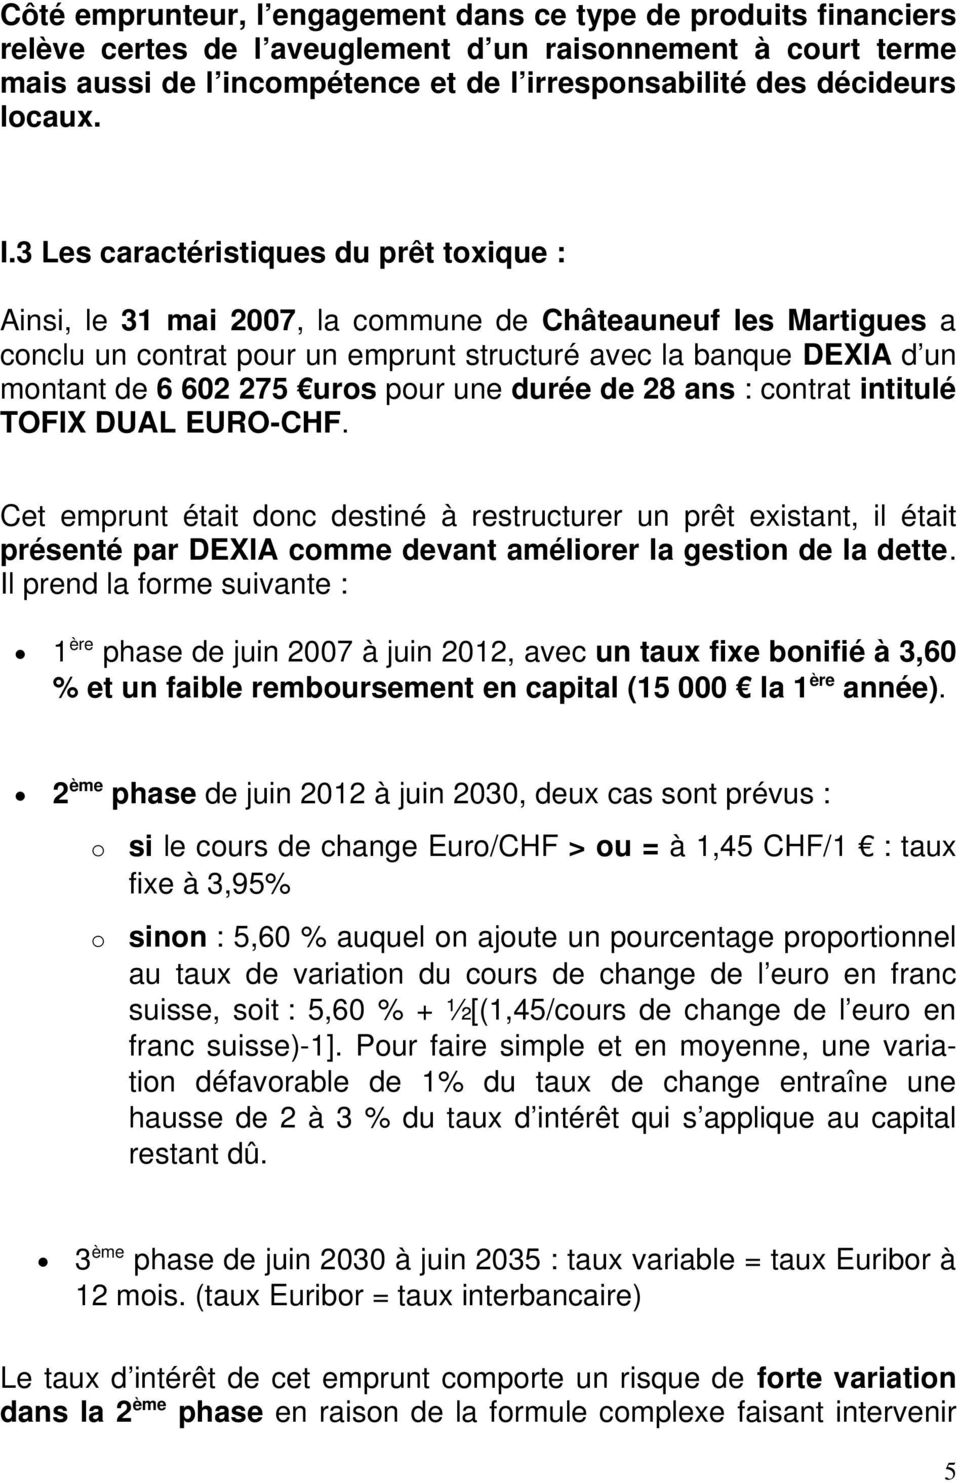 3 Les caractéristiques du prêt toxique : Ainsi, le 31 mai 2007, la commune de Châteauneuf les Martigues a conclu un contrat pour un emprunt structuré avec la banque DEXIA d un montant de 6 602 275